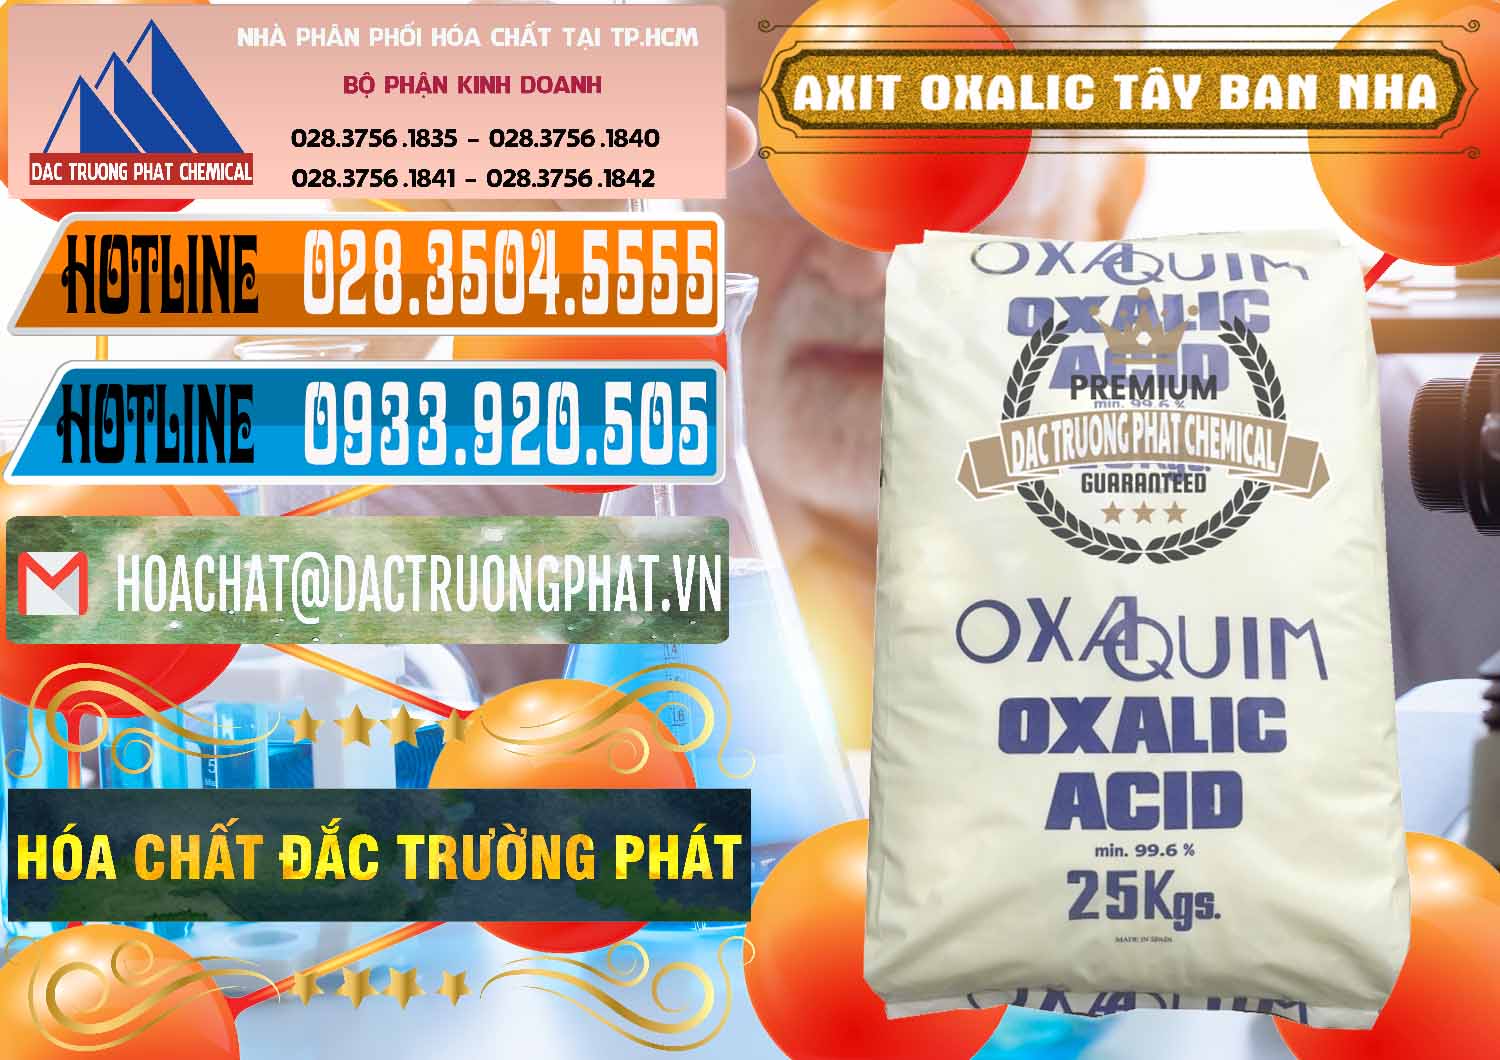 Cty chuyên phân phối ( bán ) Acid Oxalic – Axit Oxalic 99.6% Tây Ban Nha Spain - 0269 - Nơi bán - cung cấp hóa chất tại TP.HCM - stmp.net